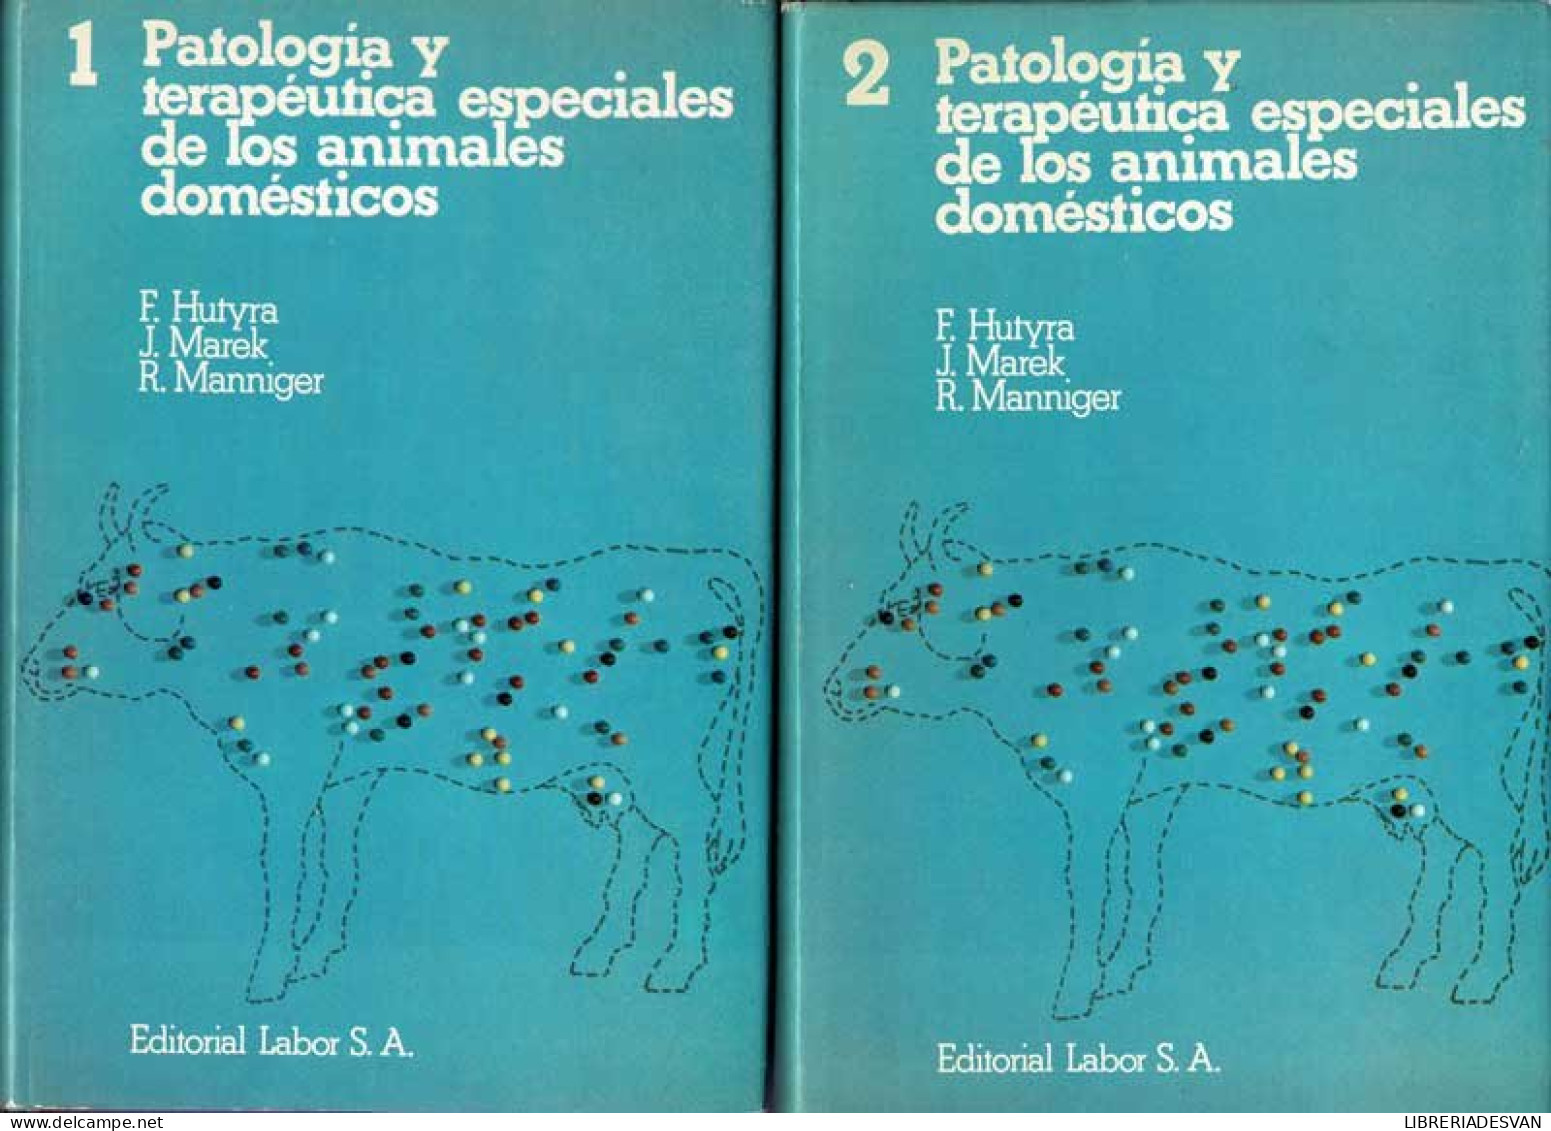 Patología Y Terapéutica Especiales De Los Animales Domésticos. 2 Volúmenes - F. Hutyra, J. Marek, R. Manniger - Lifestyle